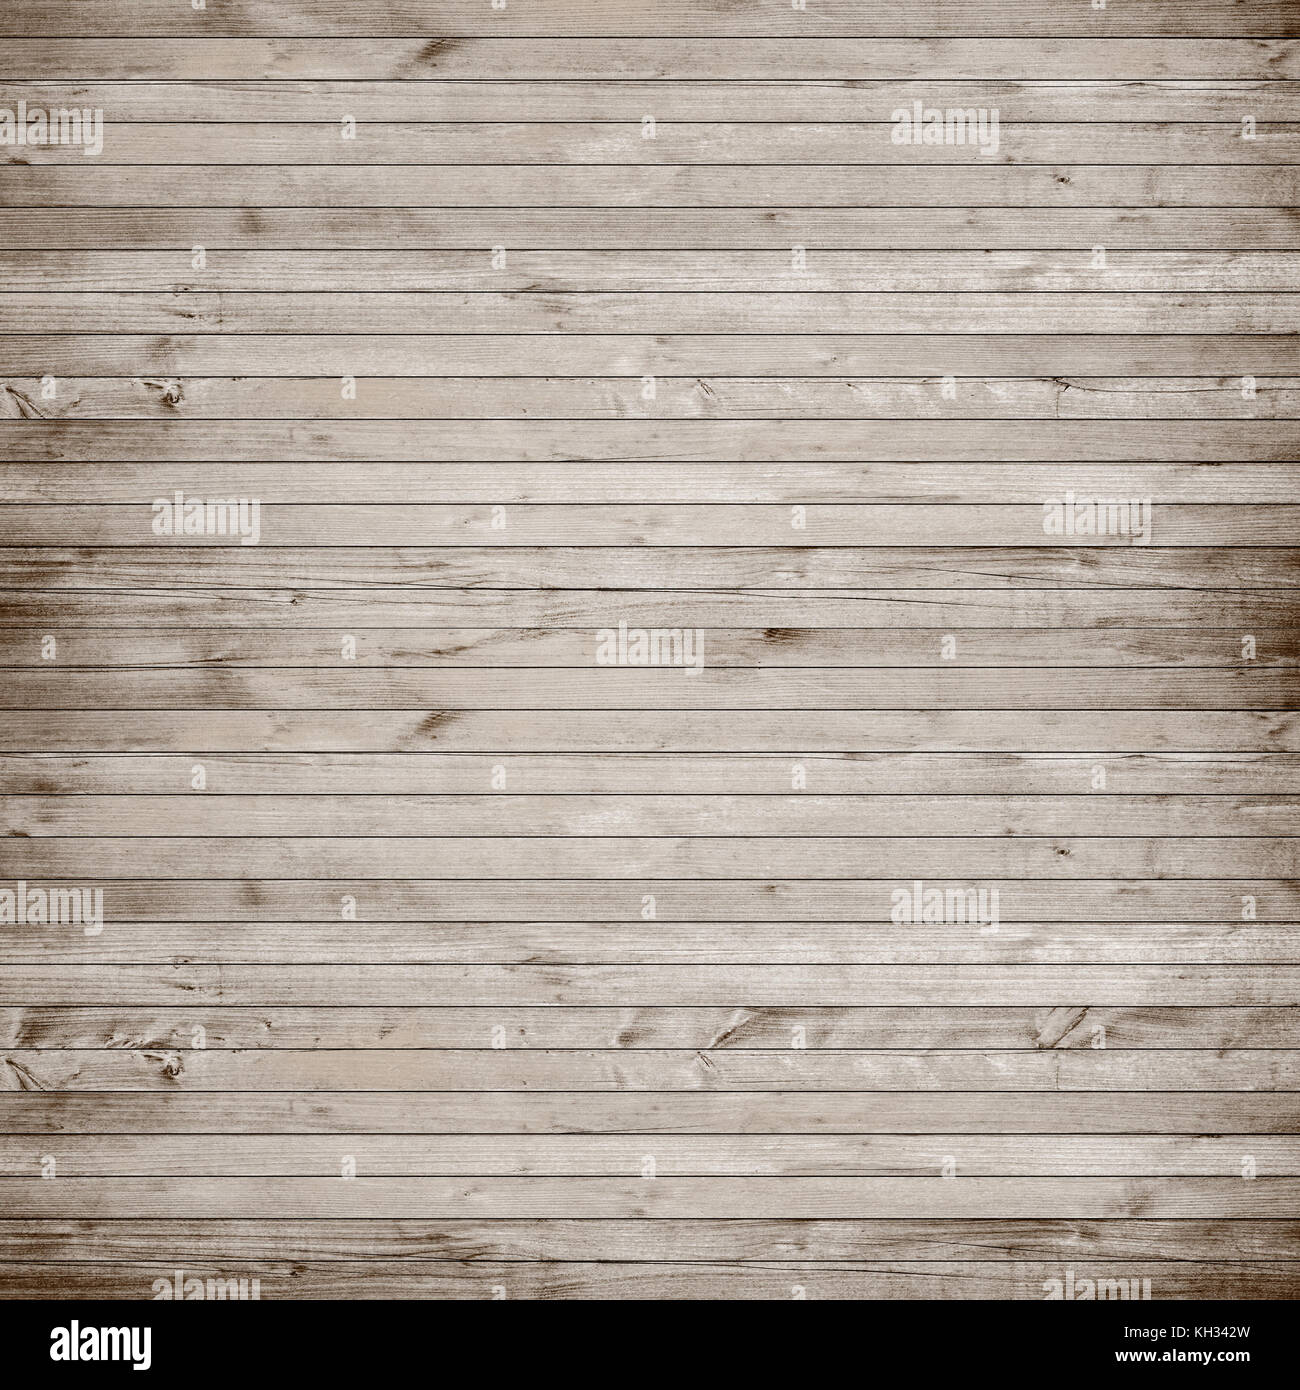 Vecchio parquet in legno, la tabella o la superficie del pavimento. grunge texture di legno con tavole orizzontali. Foto Stock